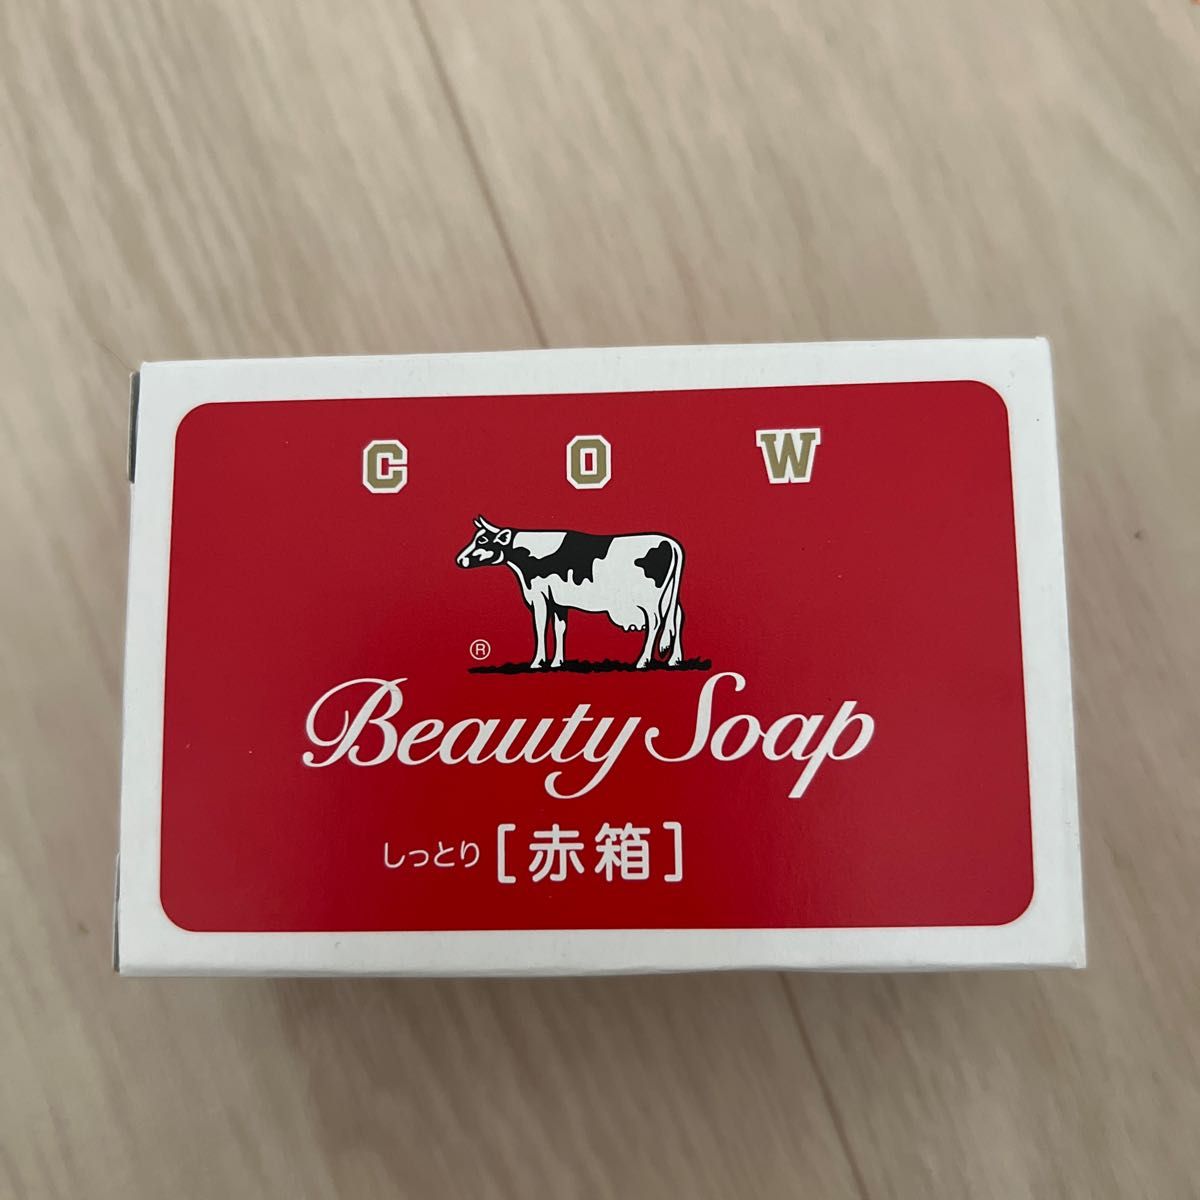 牛乳石鹸BEAUTY SOAP 化粧石鹸カウブランド赤箱a1 200個入100g